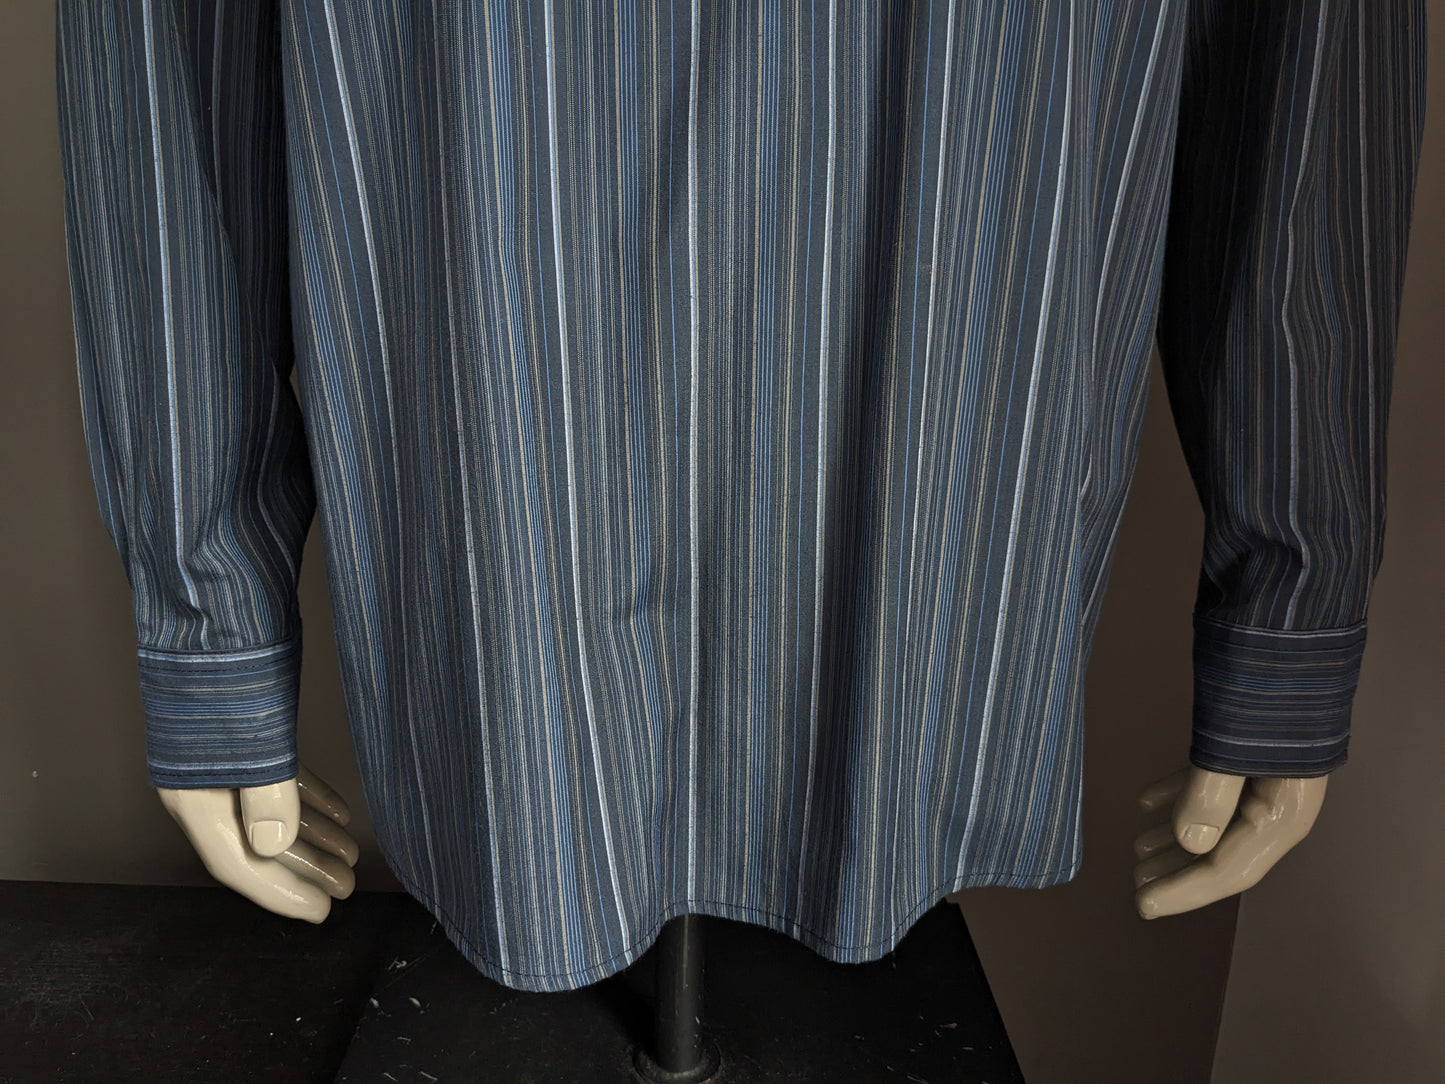 Camicia da camicia Atlas for Men con verticale / agricoltori / collare MAO. Strisce marrone blu. Dimensione 2xl / xxl.